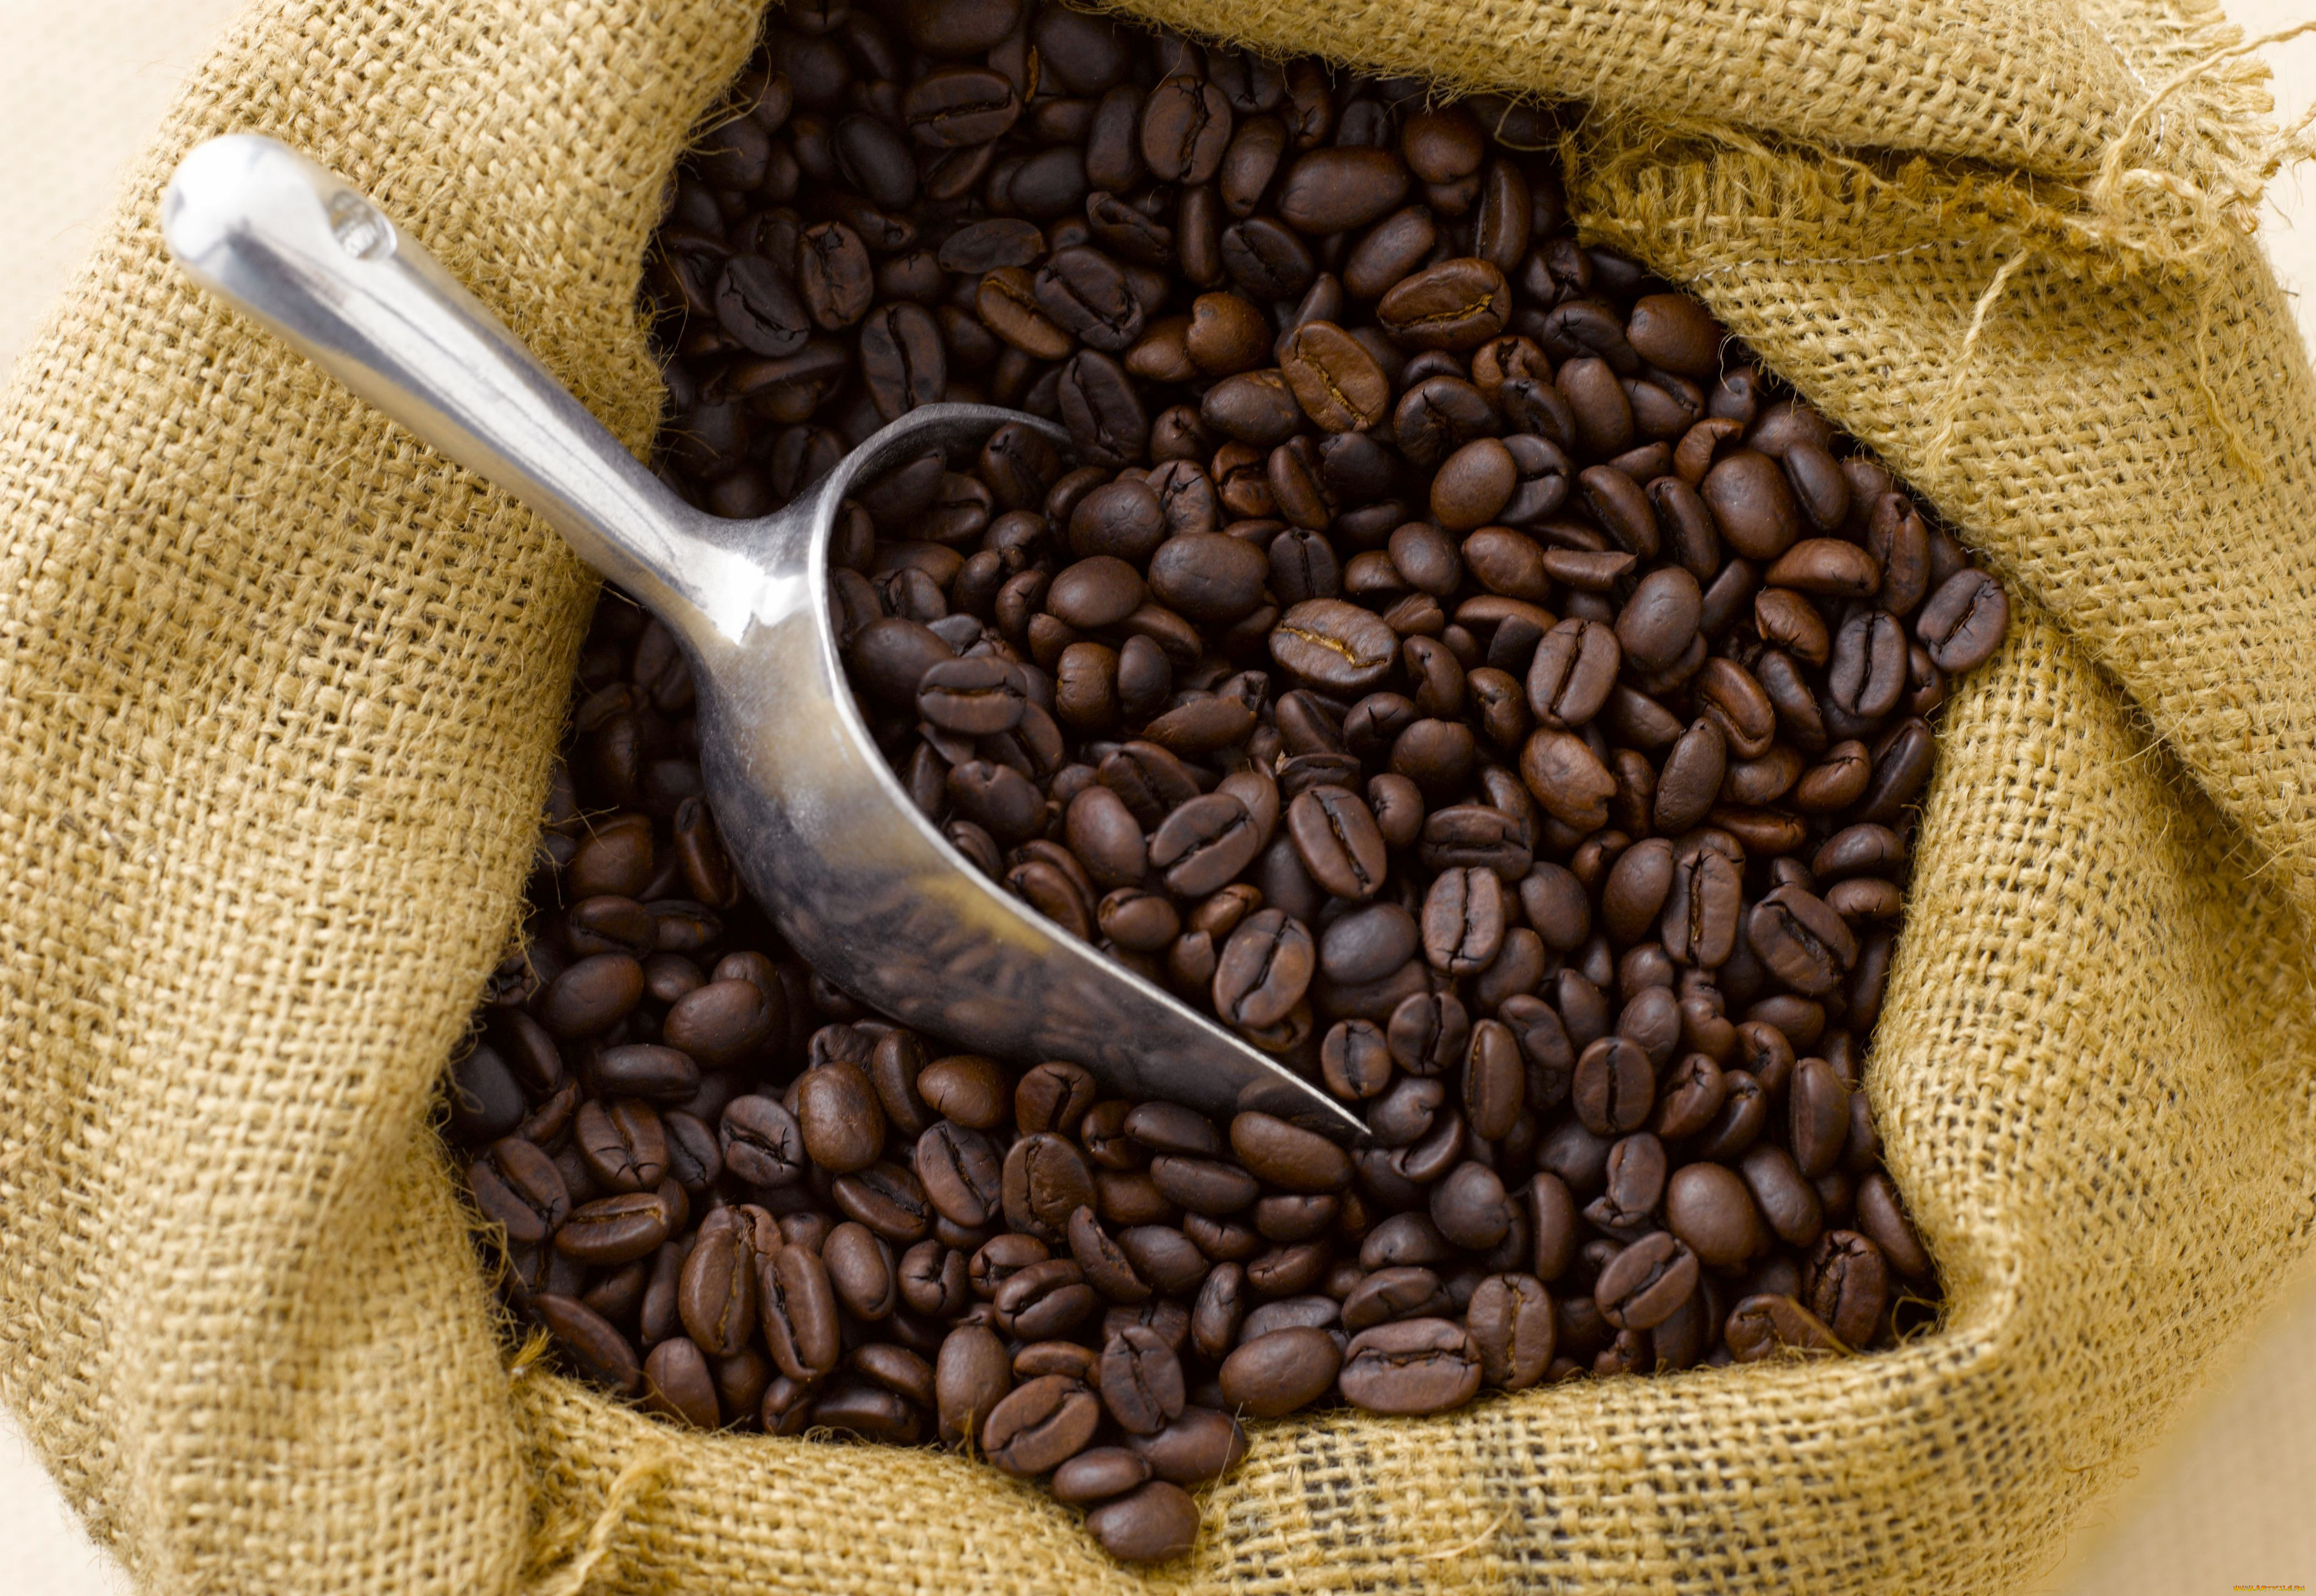 Крупнейшим производителем кофе является